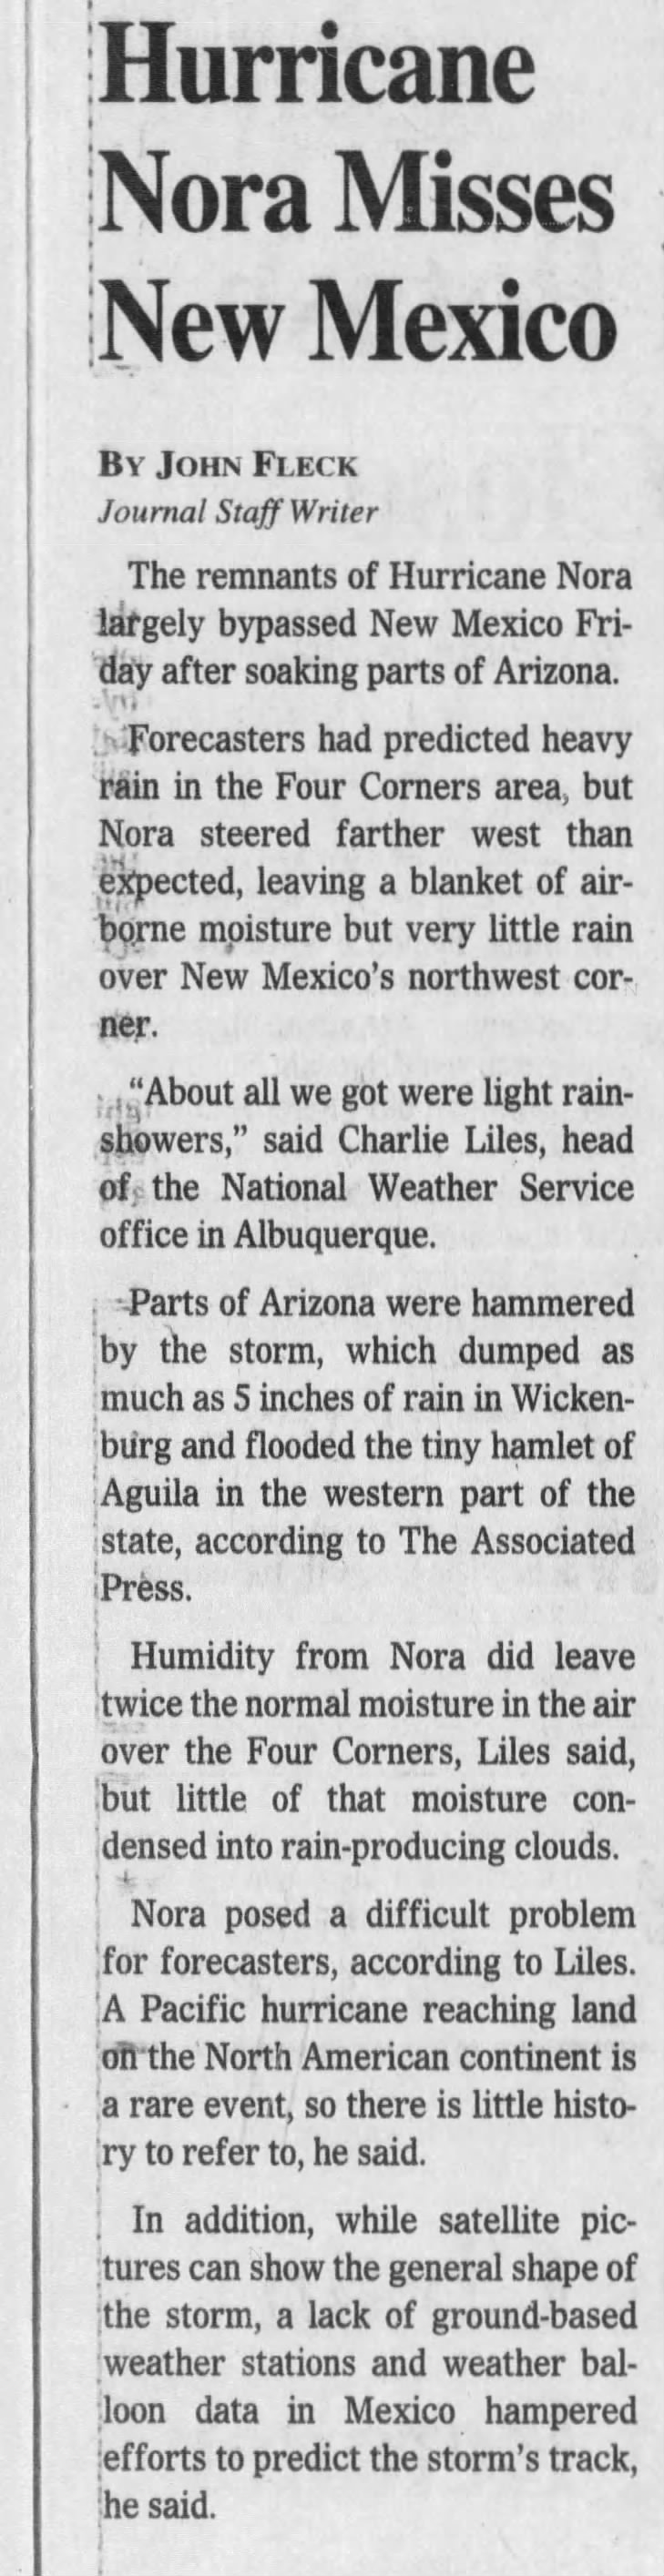 Hurricane Nora Misses New Mexico